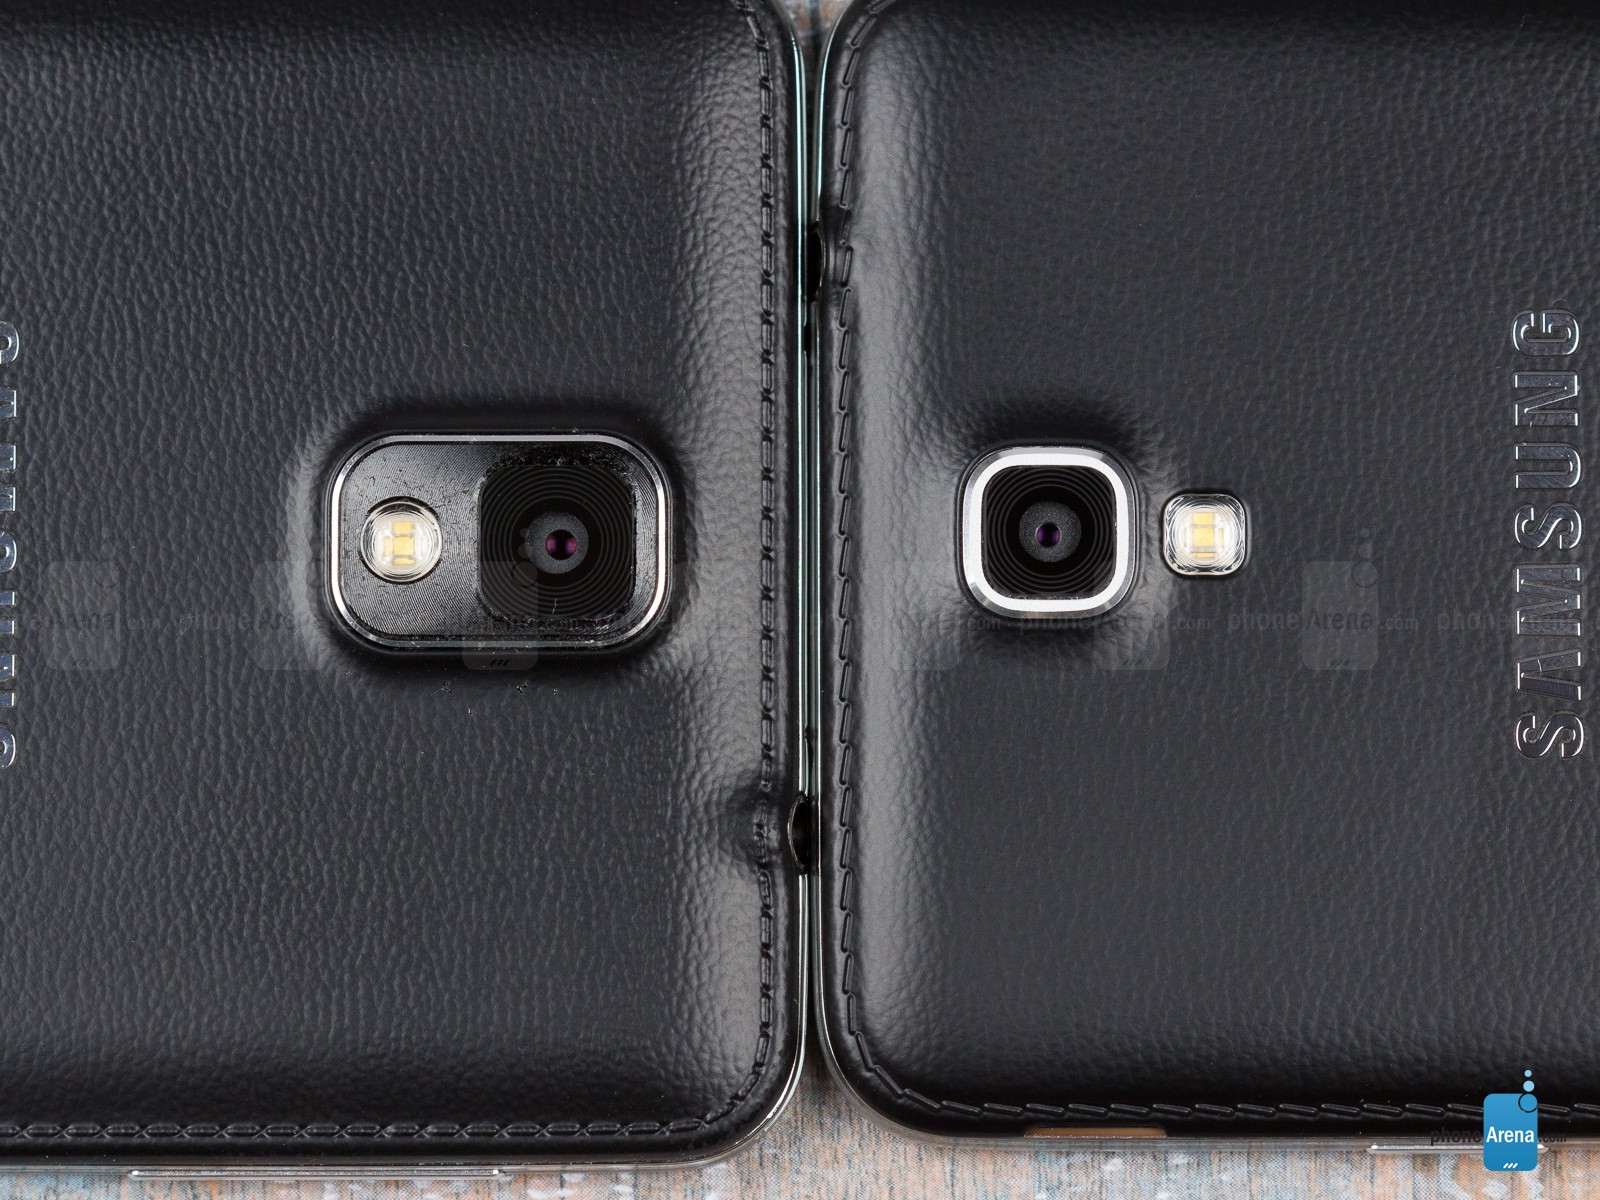 Camera của Galaxy Note 3 Neo có cách bố trí khác một chút khi cảm biến và đèn flash LED không được đặt cùng một khung tròn. Ngoài ra, Galaxy Note 3 Neo chỉ được trang bị camera độ phân giải 8 megapixel.